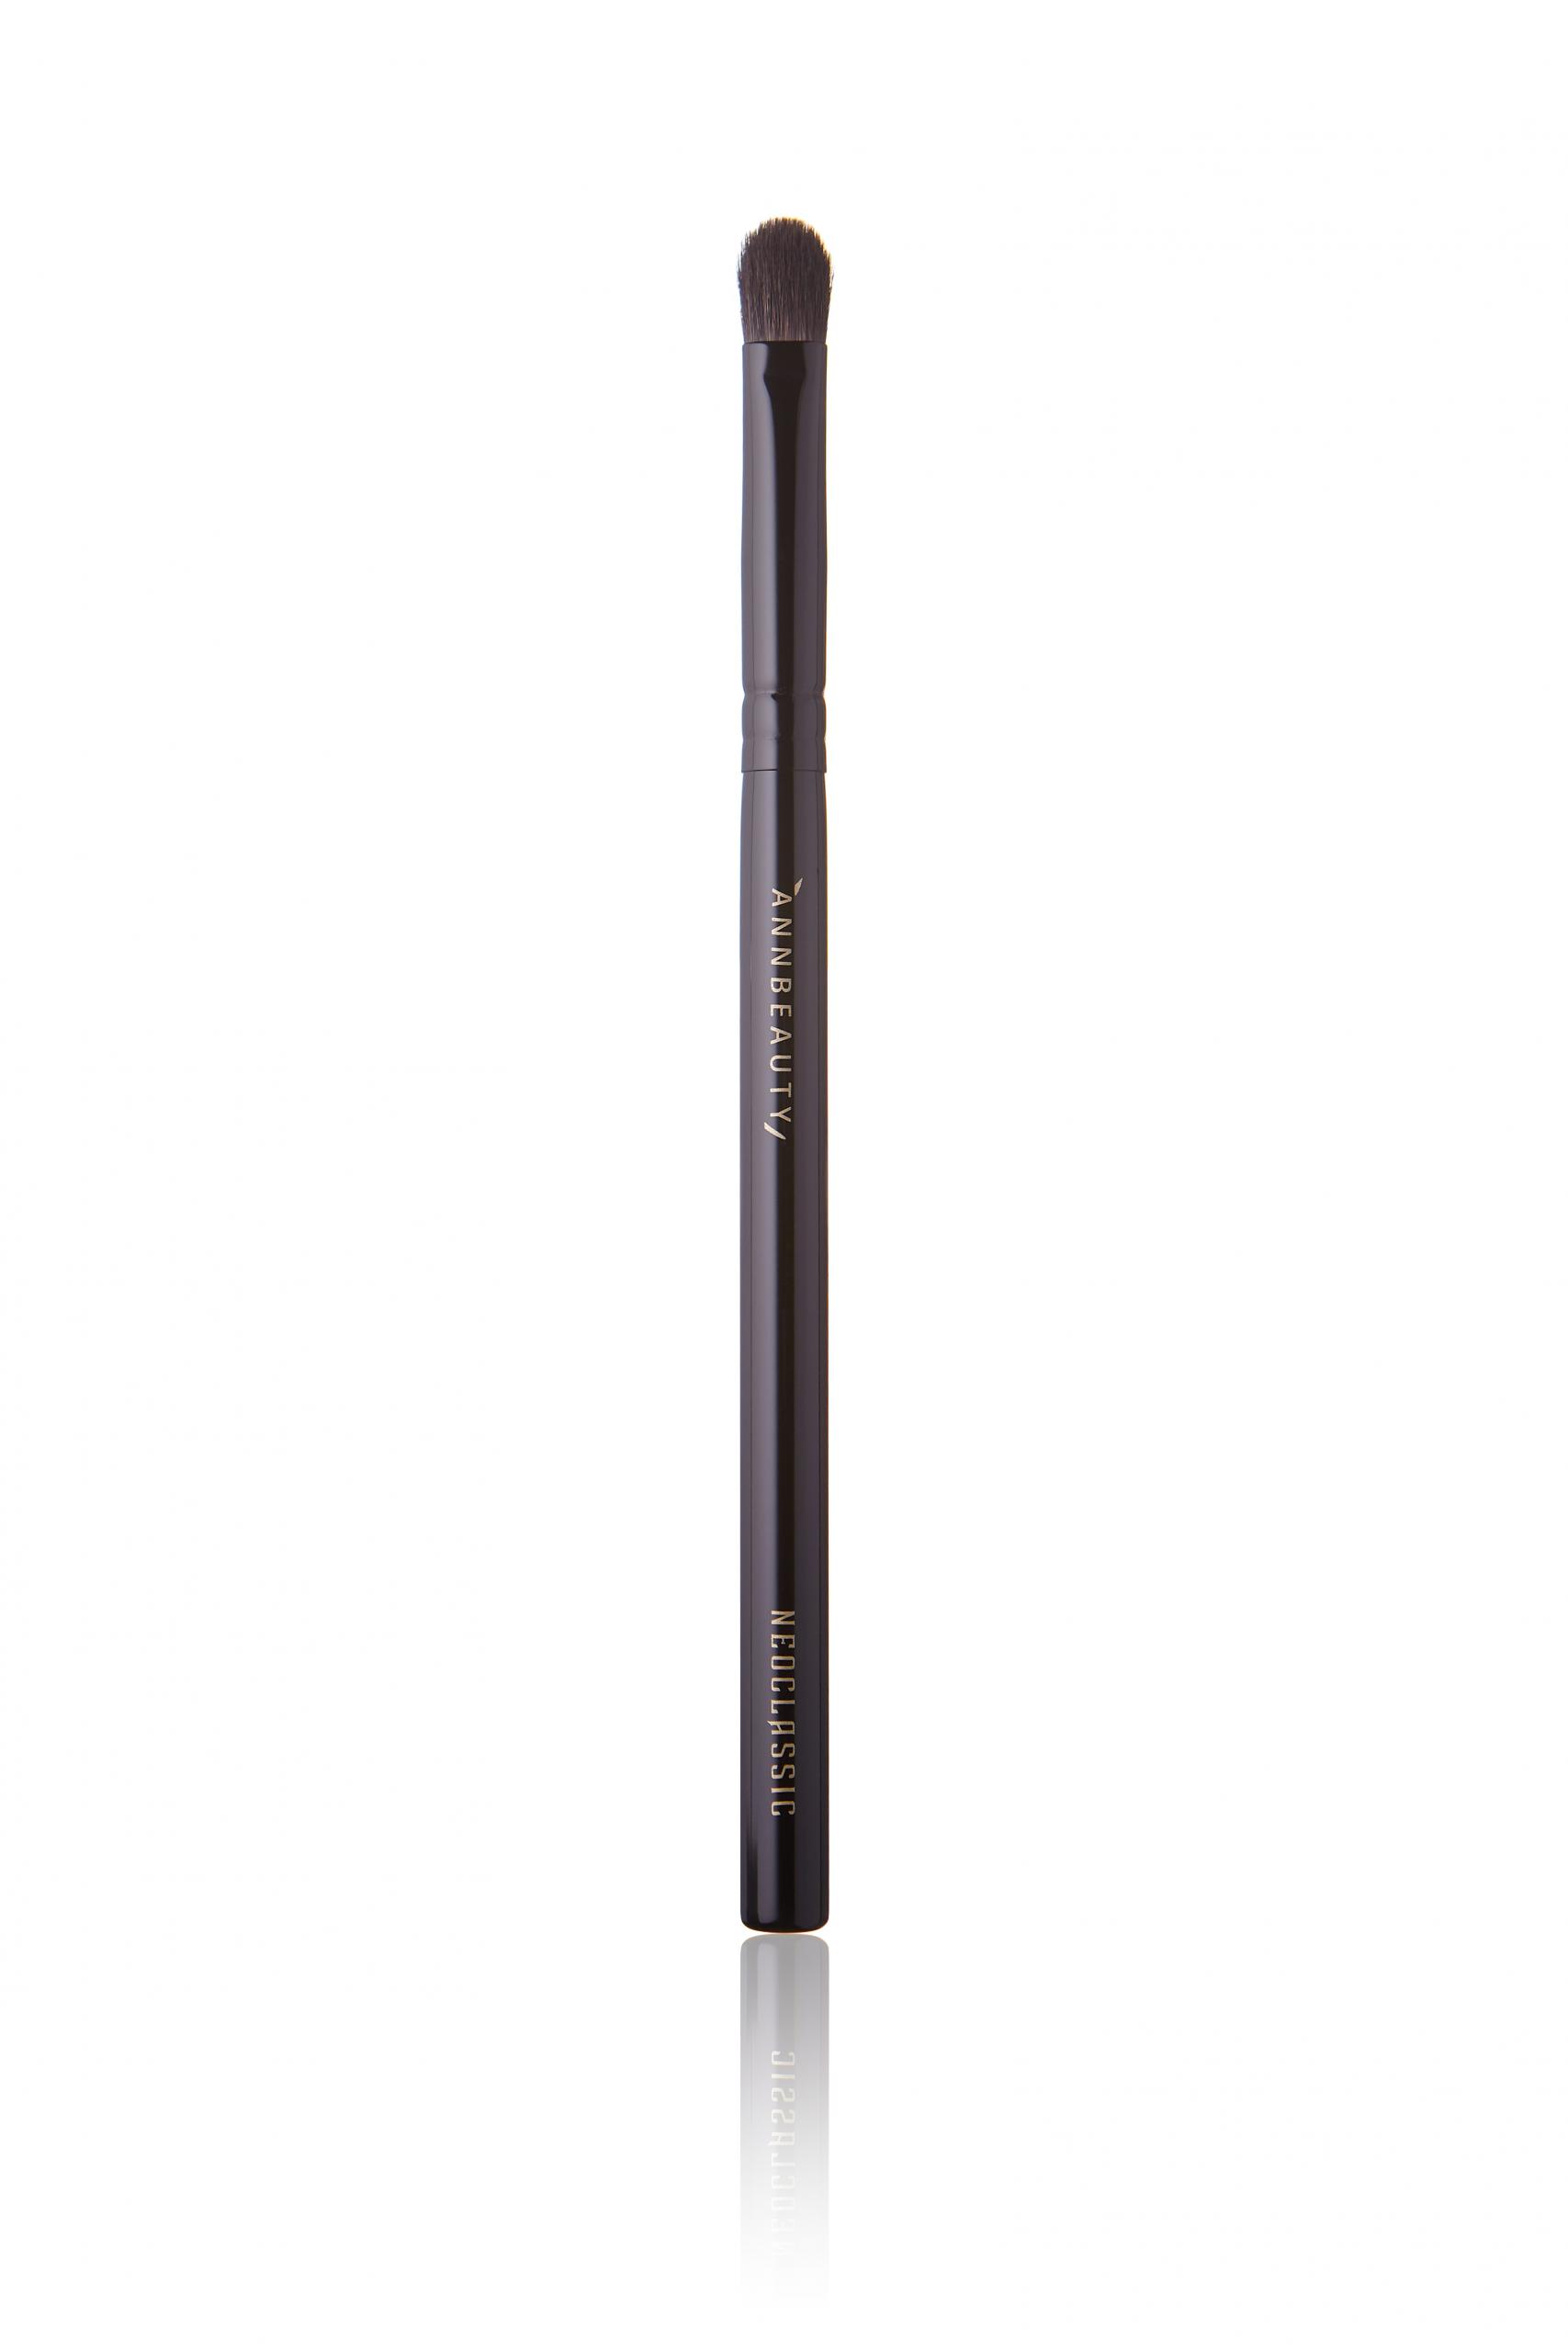 Annbeauty N10 - плоская кисть для растушёвки карандаша и теней вдоль ресничного ряда